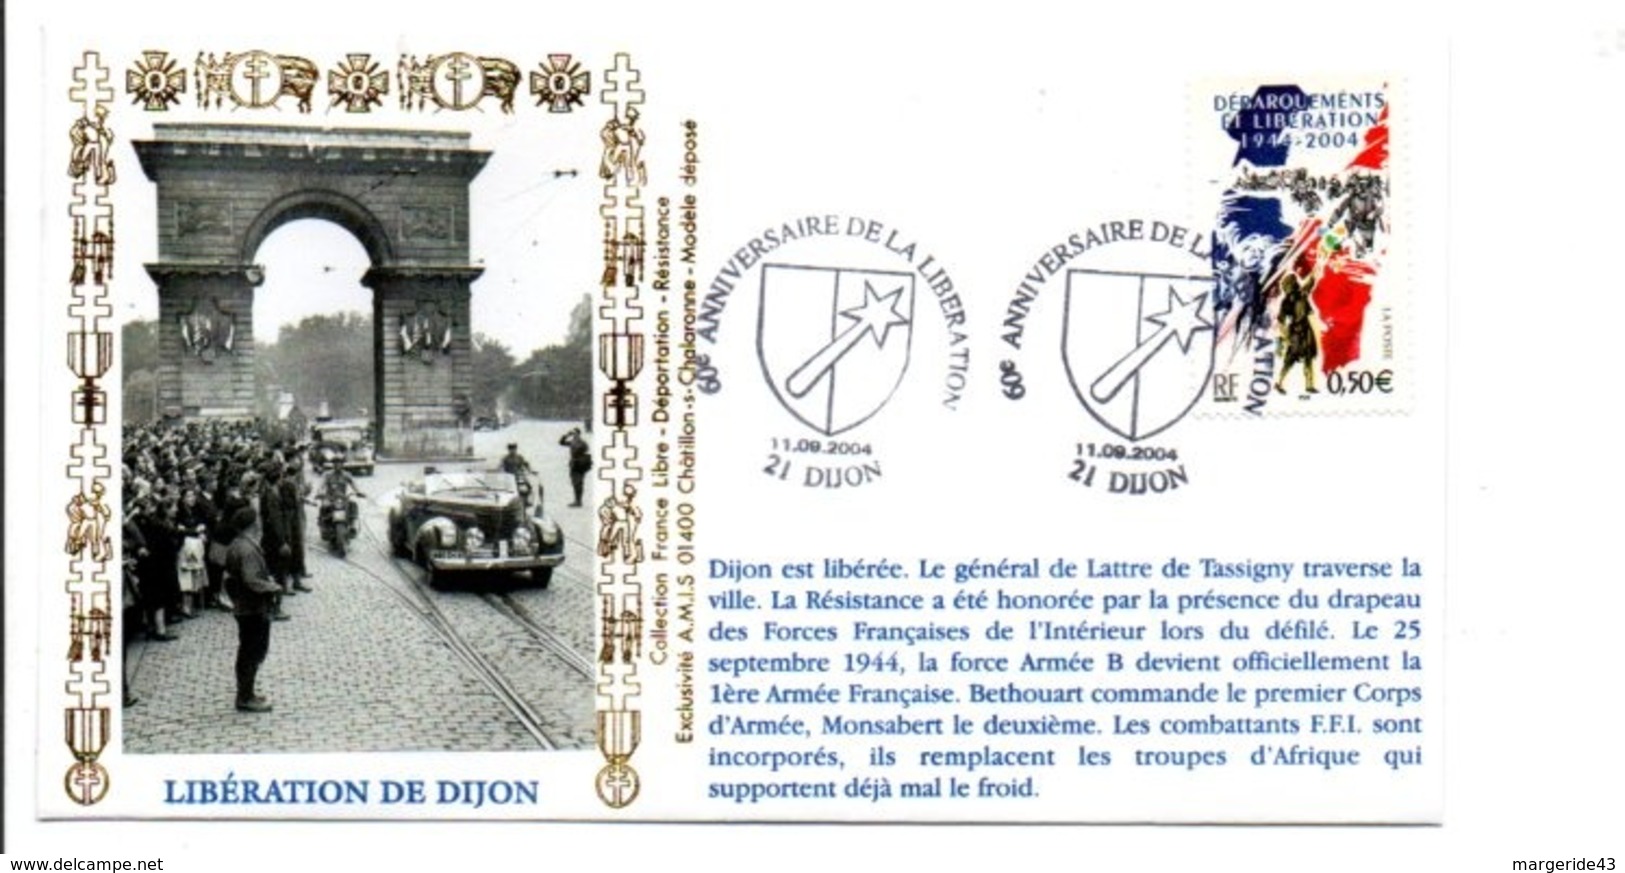 60 ANS LIBERATION DE DIJON - WW2